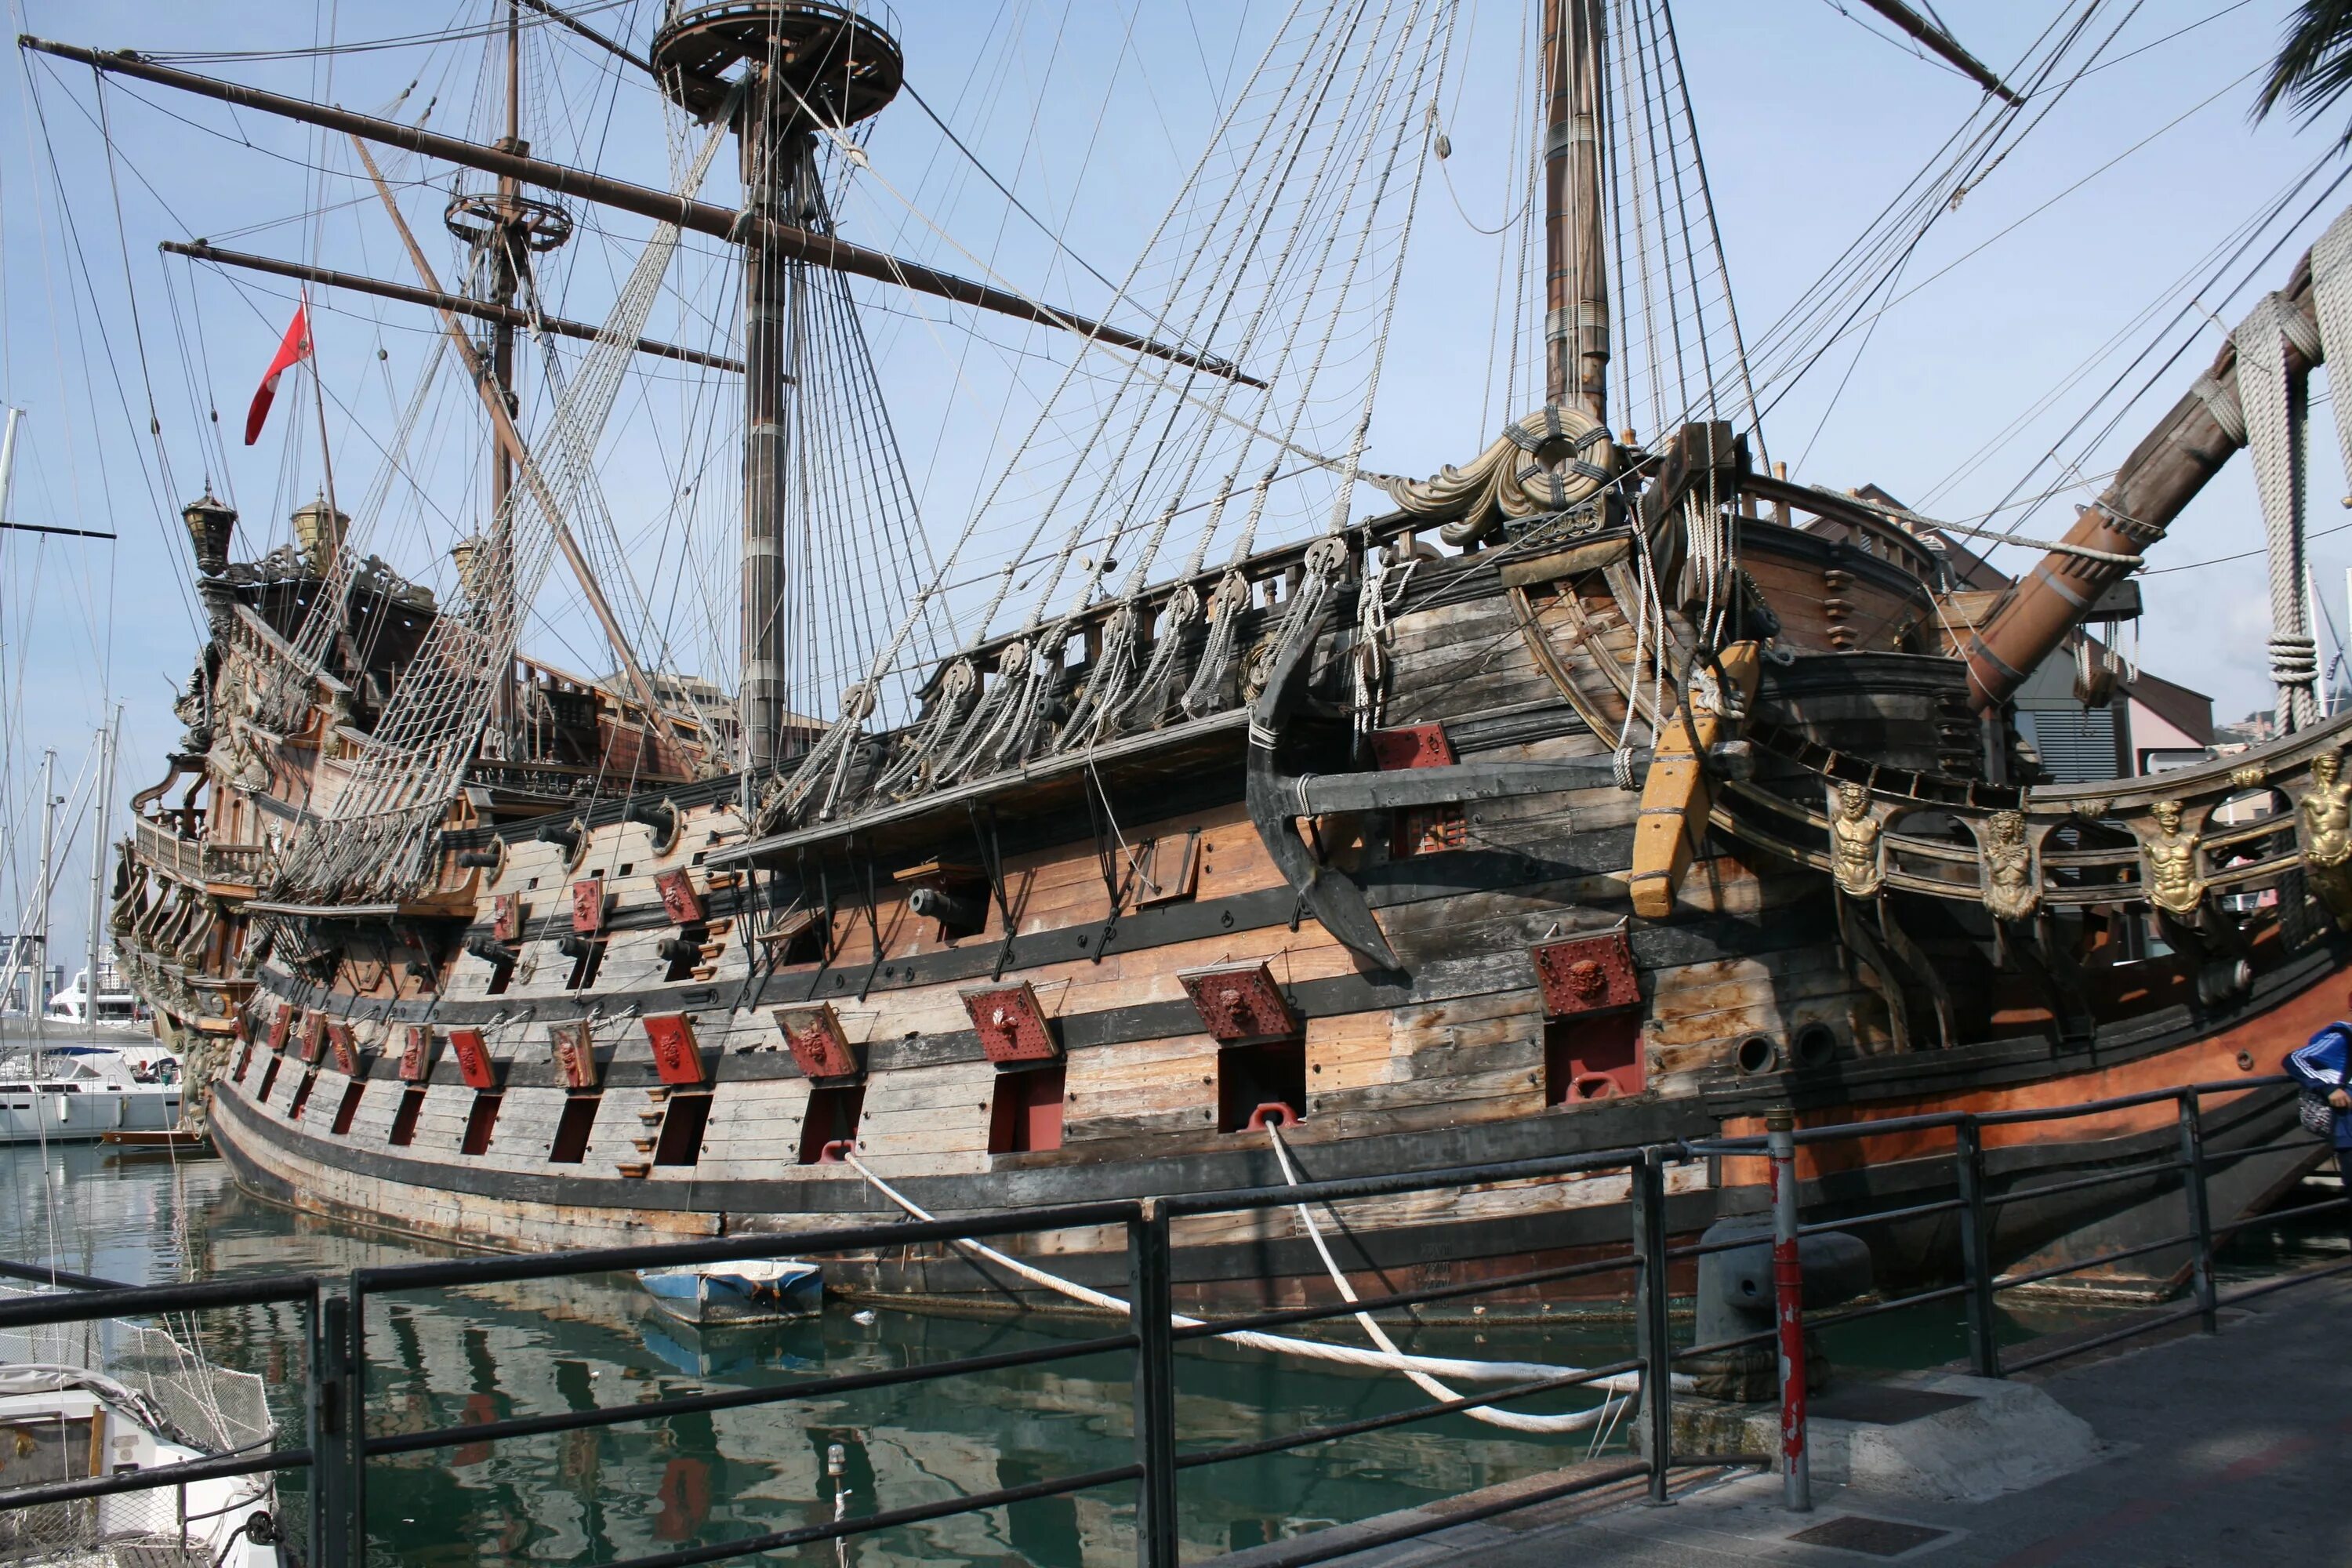 Галеон корабль 17 века. Испанский Галеон 17 века. Манильский Галеон корабль. Галеон корабль 18 века. Названия фрегатов